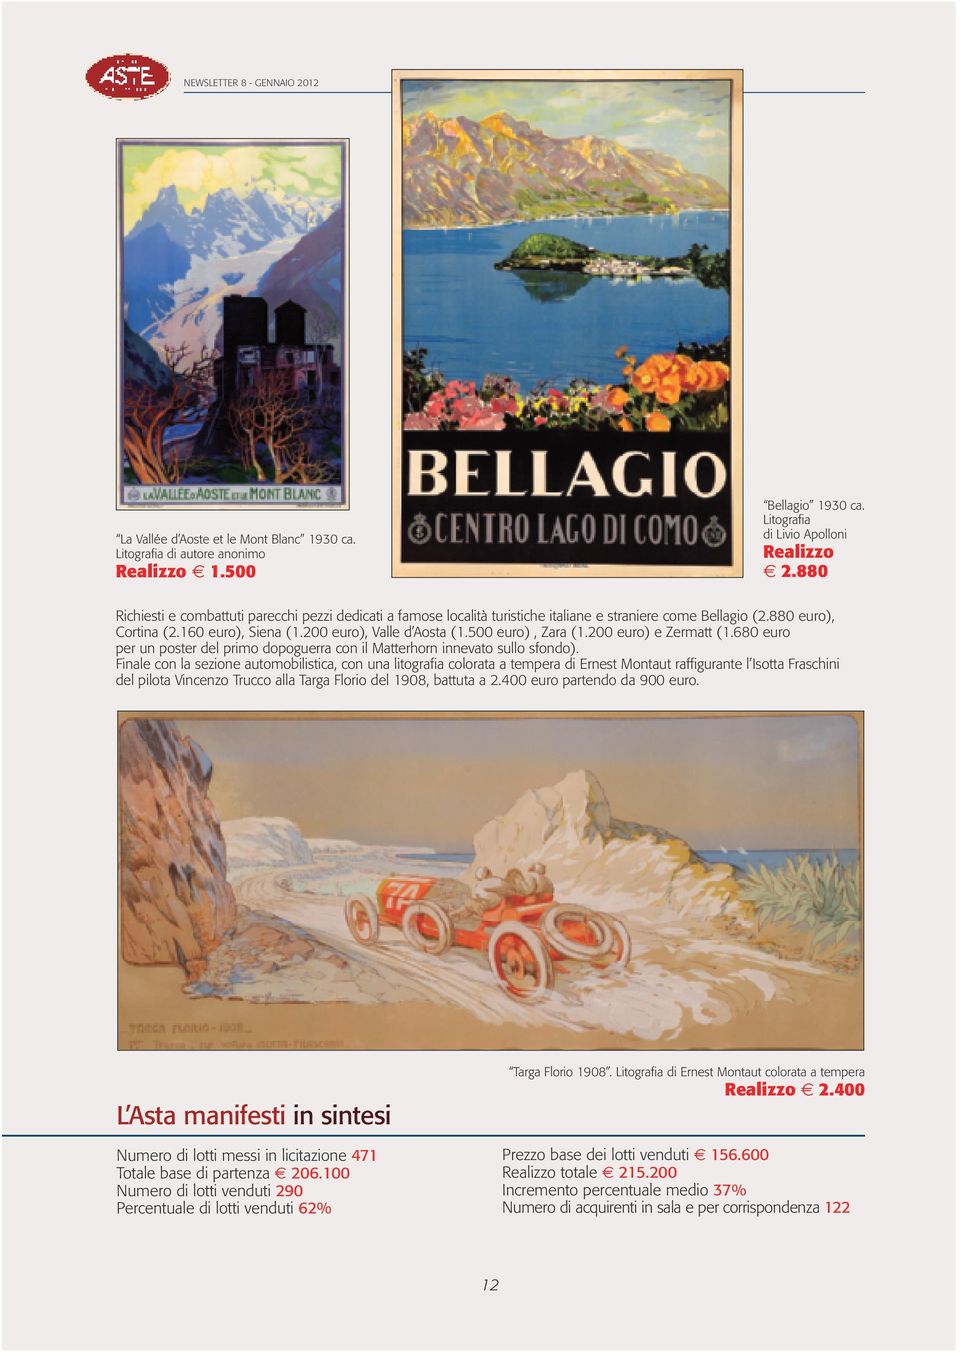 500 euro), Zara (1.200 euro) e Zermatt (1.680 euro per un poster del primo dopoguerra con il Matterhorn innevato sullo sfondo).